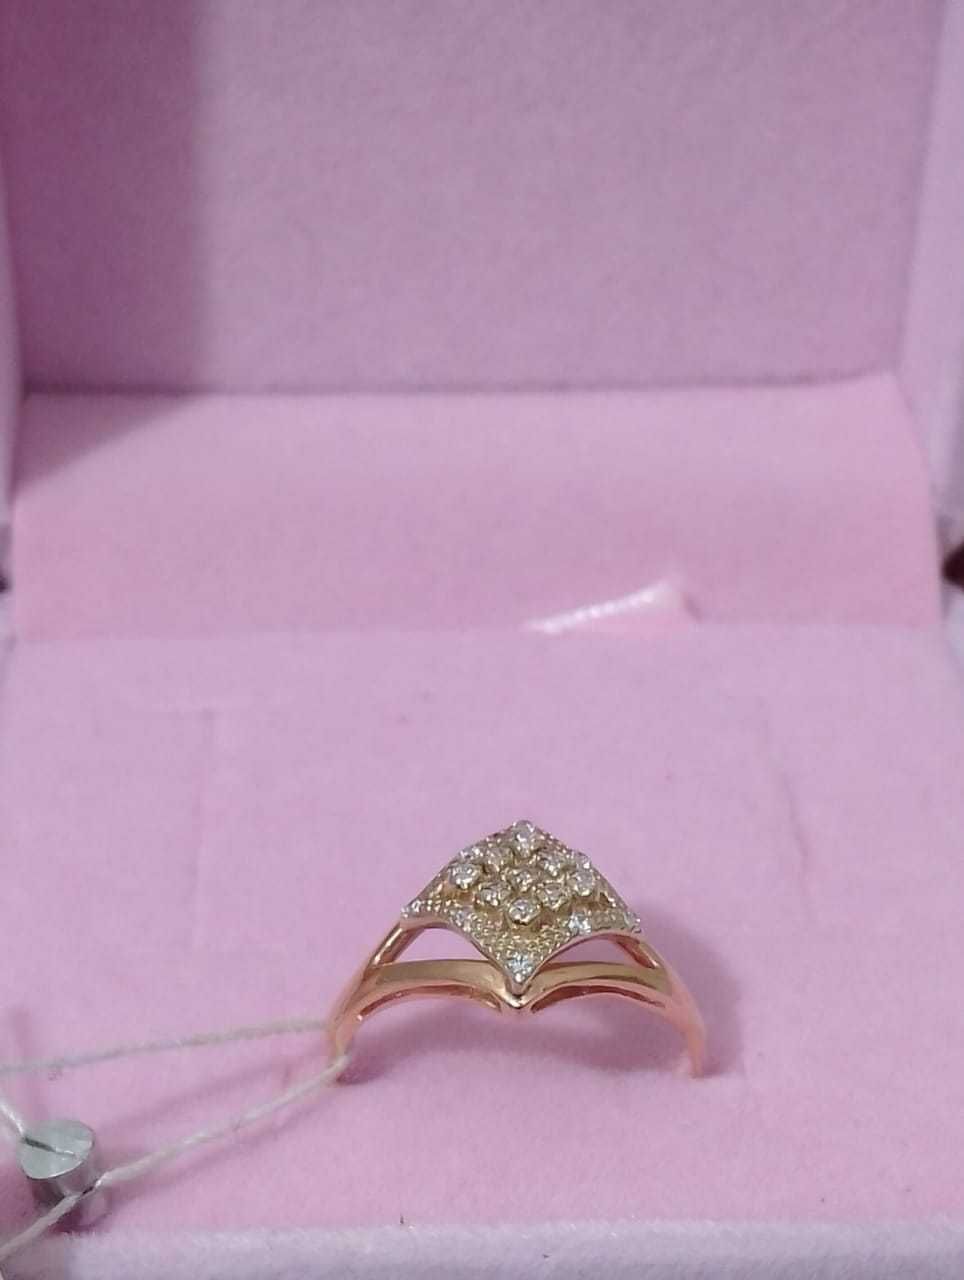 Обалденное золотое кольцо с фианитами на подарок!!!